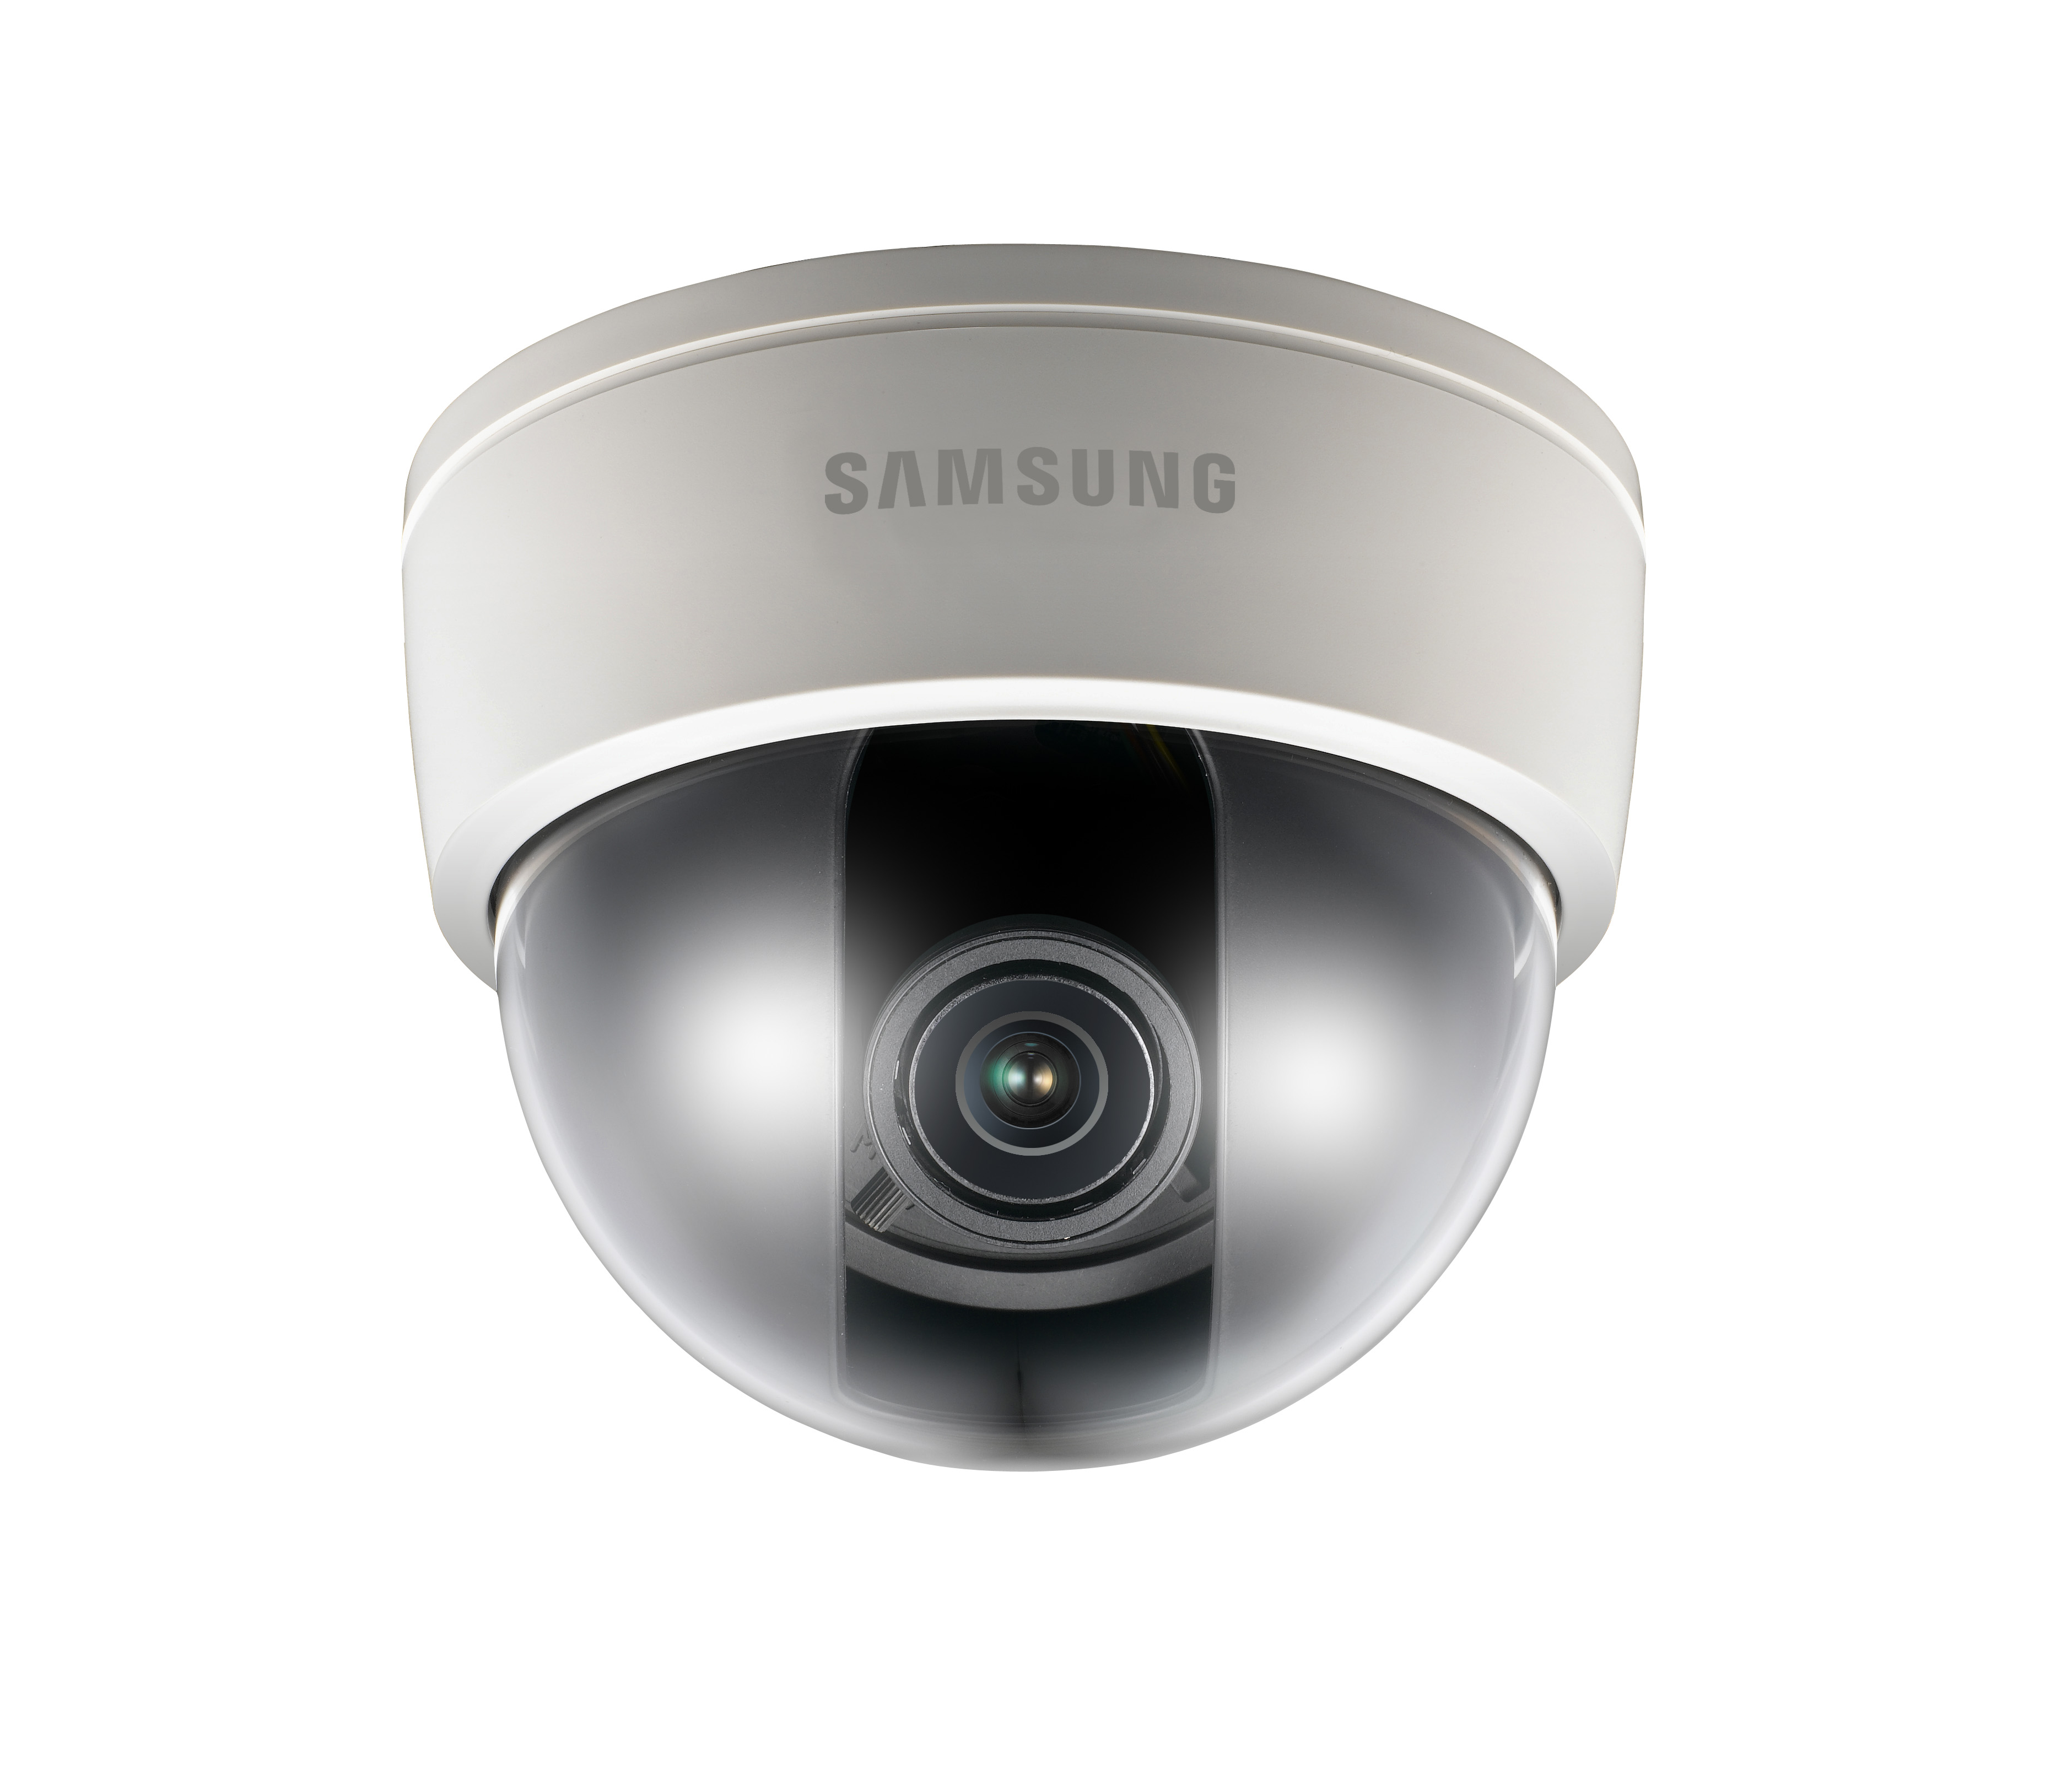 Цветная камера. SCD-2080rp цветная купольная видеокамера Samsung. Камера видеонаблюдения самсунг SND 5011p. Samsung SND-6084p. SND-l6083rp.